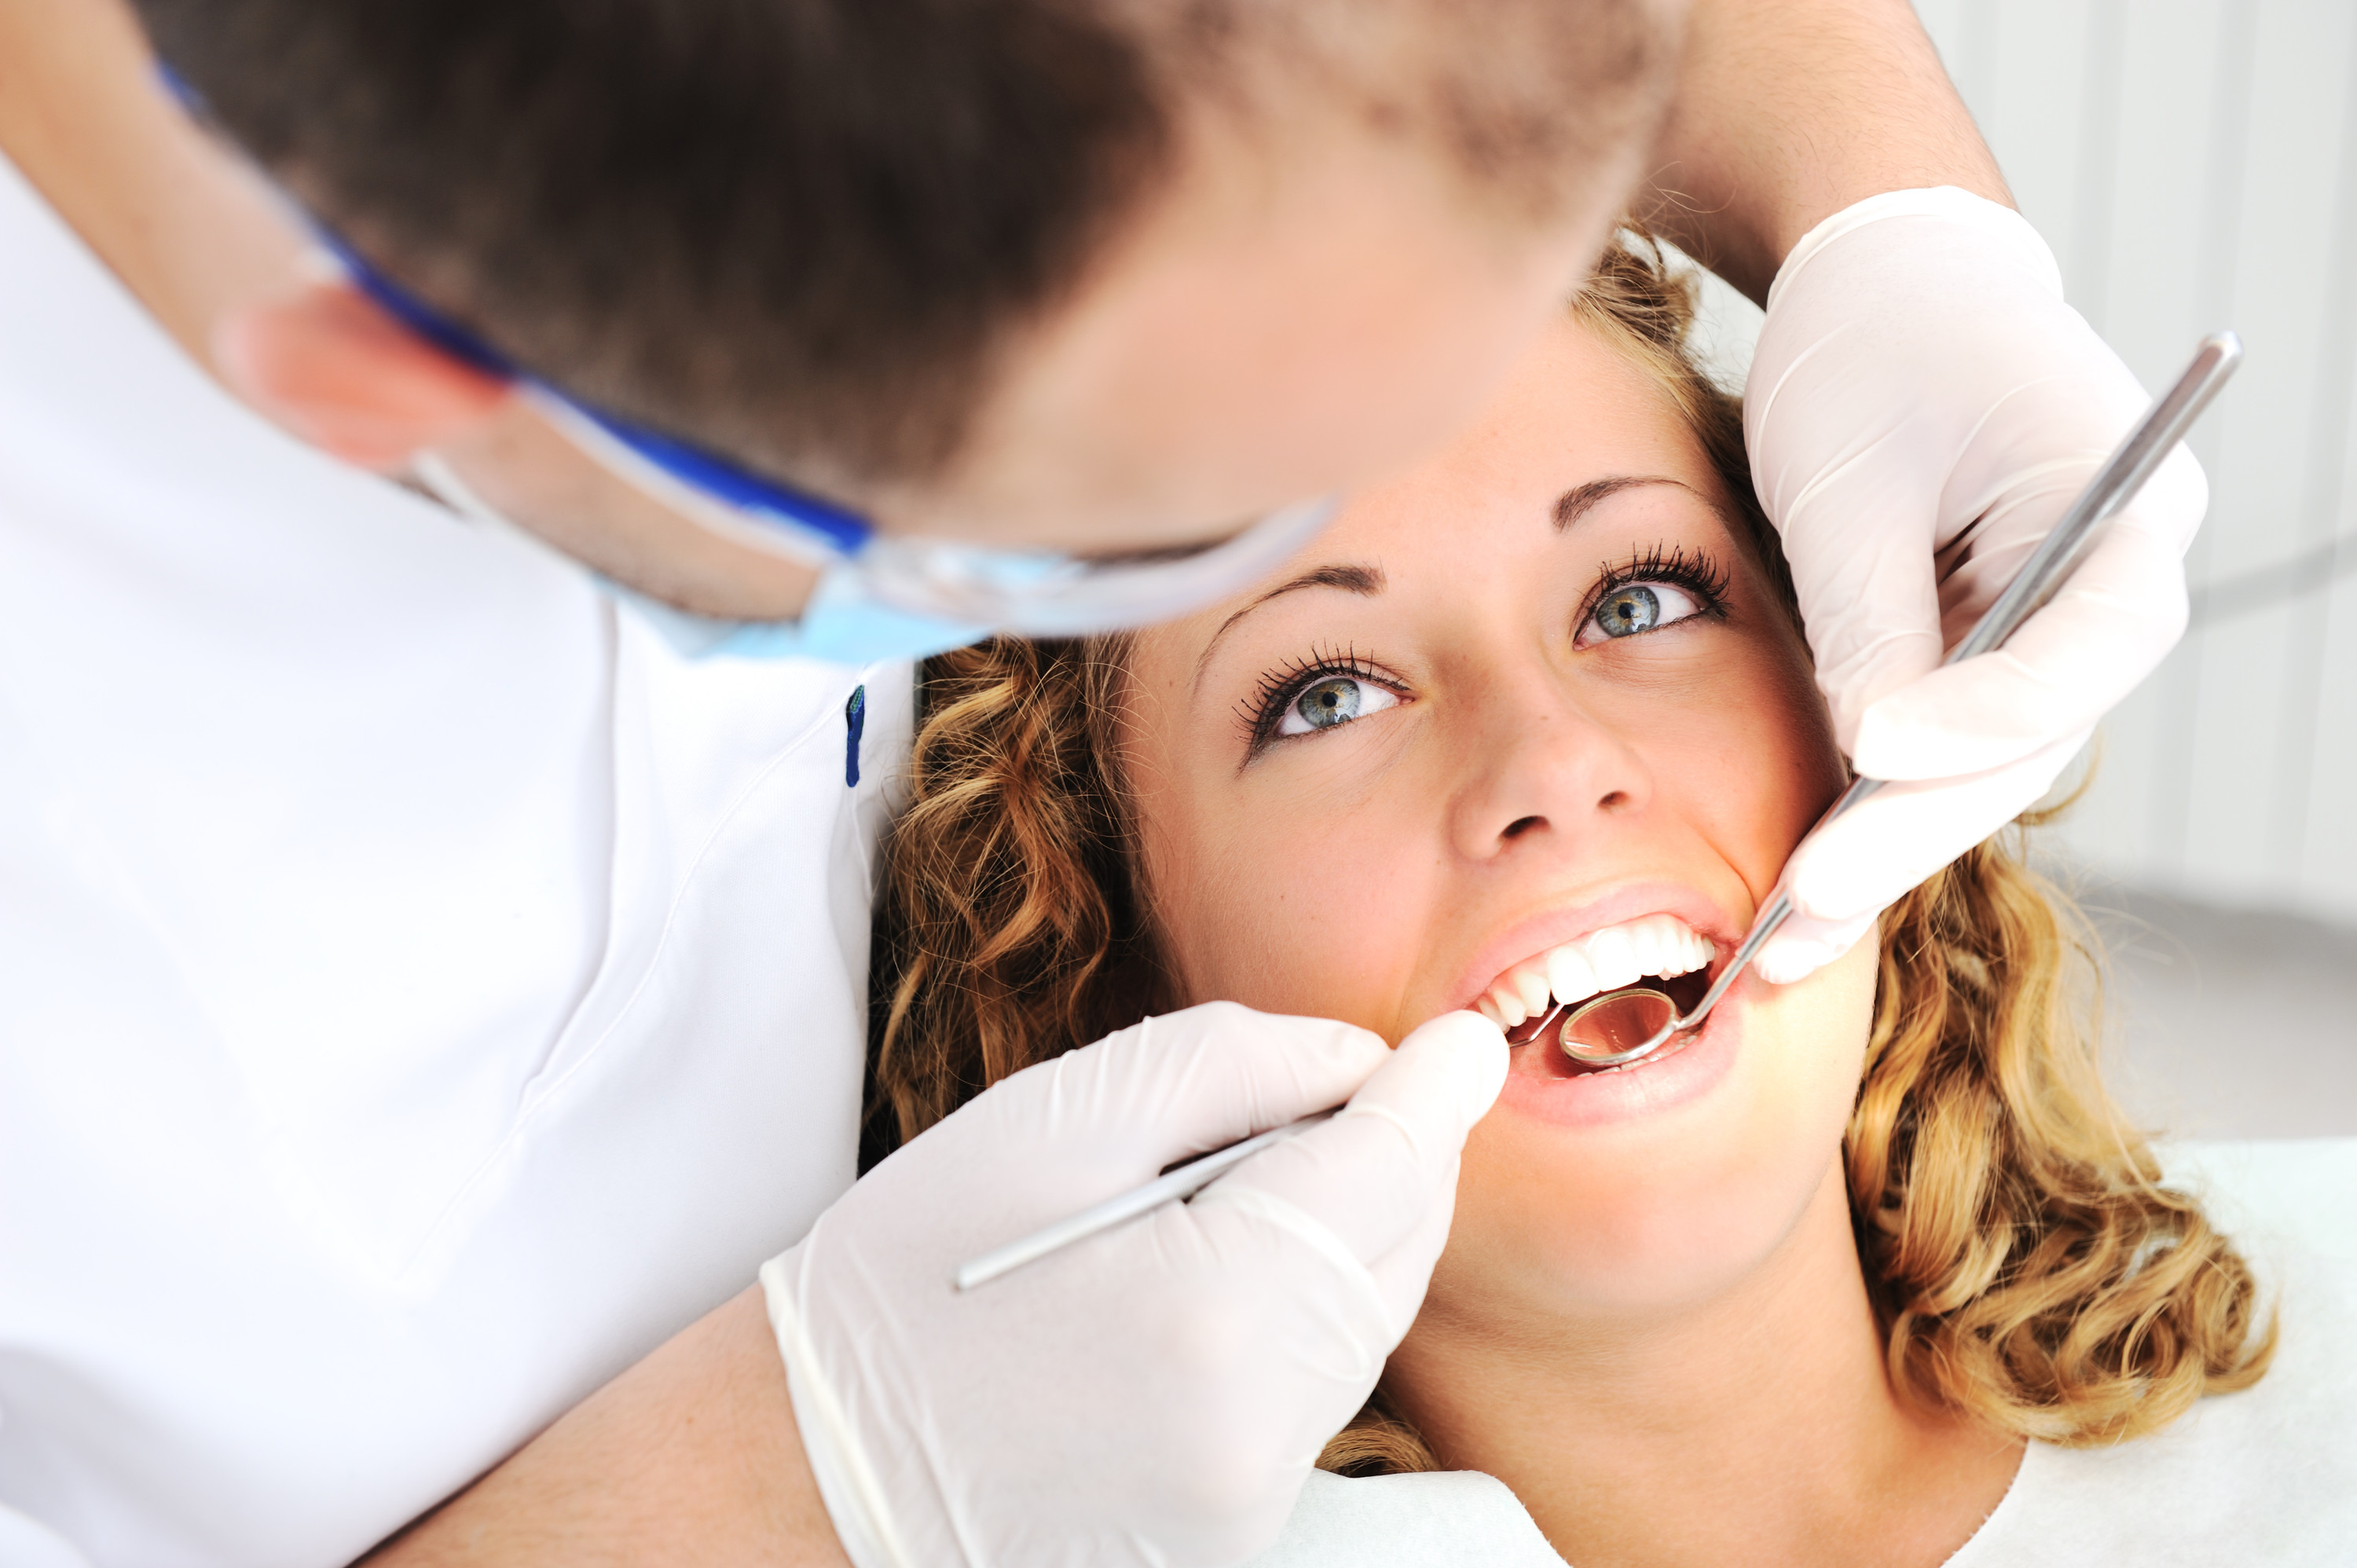 Impianto dentale: i vantaggi e le caratteristiche dell’intervento